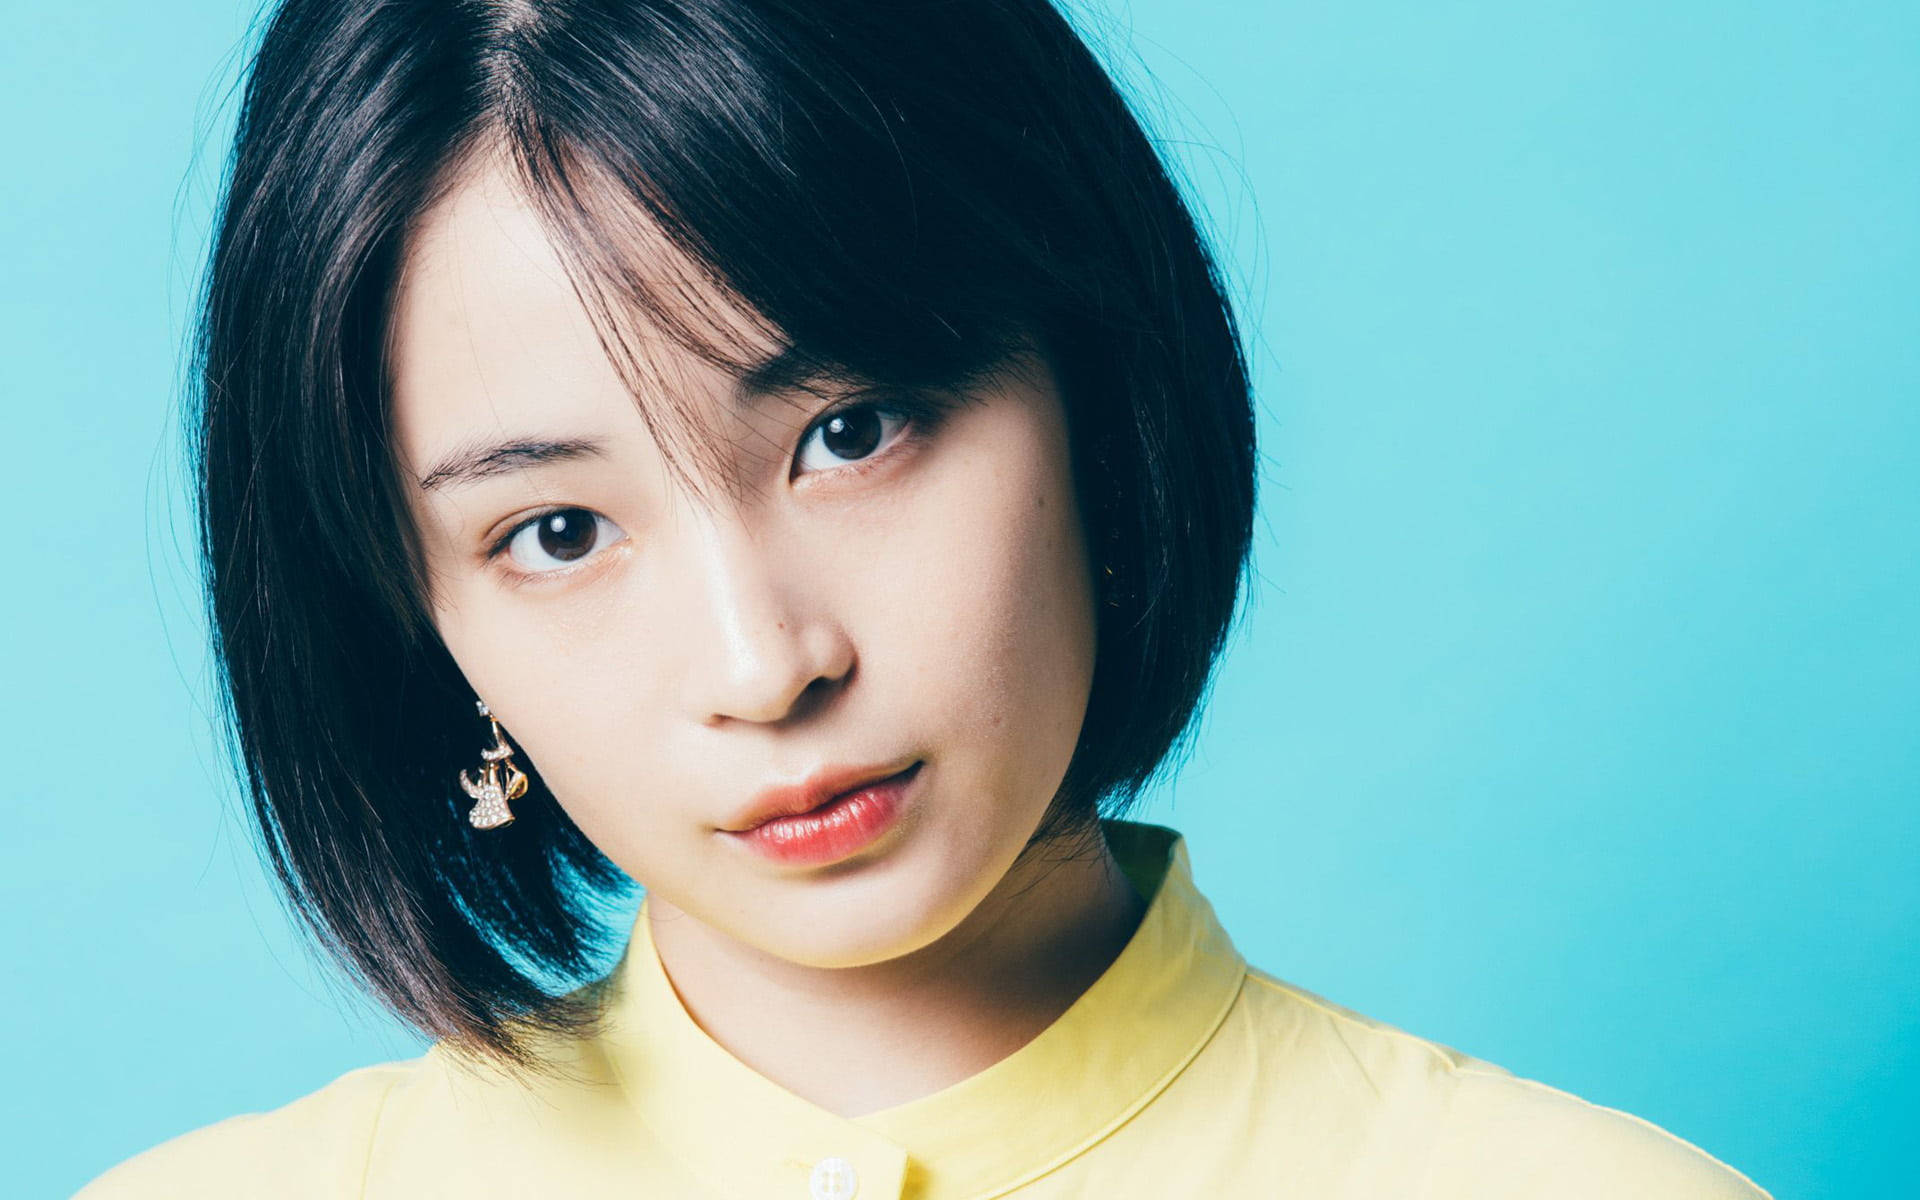 Japanese Girl With Short Hair Wallpaper